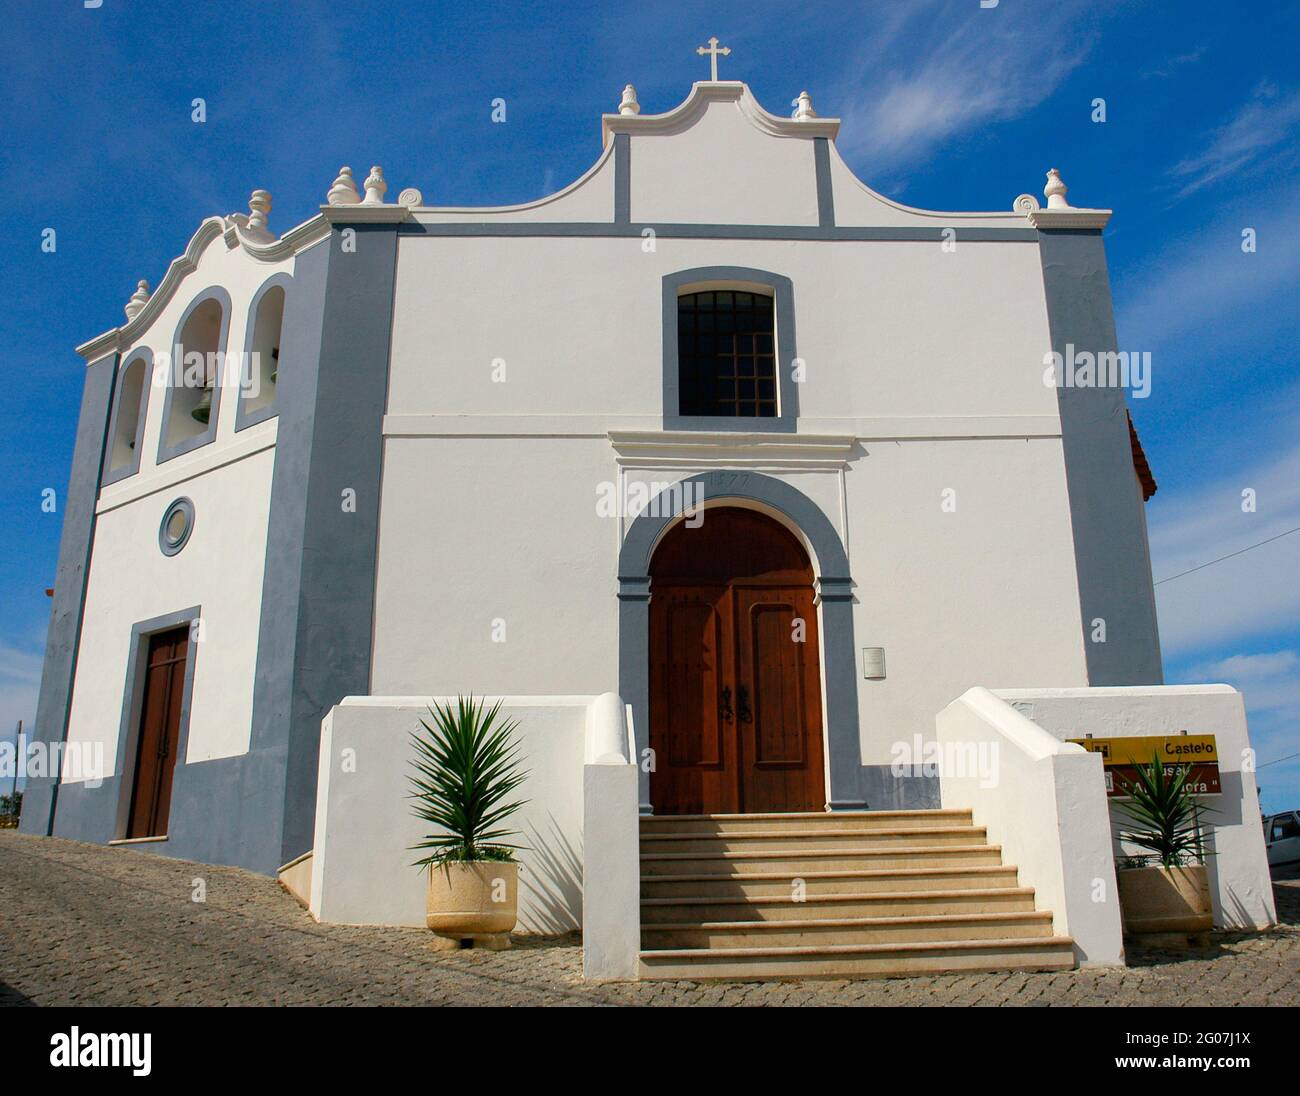 Portugal, Aljezur. Kirche der Barmherzigkeit (Igreja da Misericórdia). Der Tempel stammt aus dem 16. Jahrhundert, obwohl er im 18. Jahrhundert nach dem Erdbeben von 1755 wieder aufgebaut wurde. Algarve-Region. Stockfoto